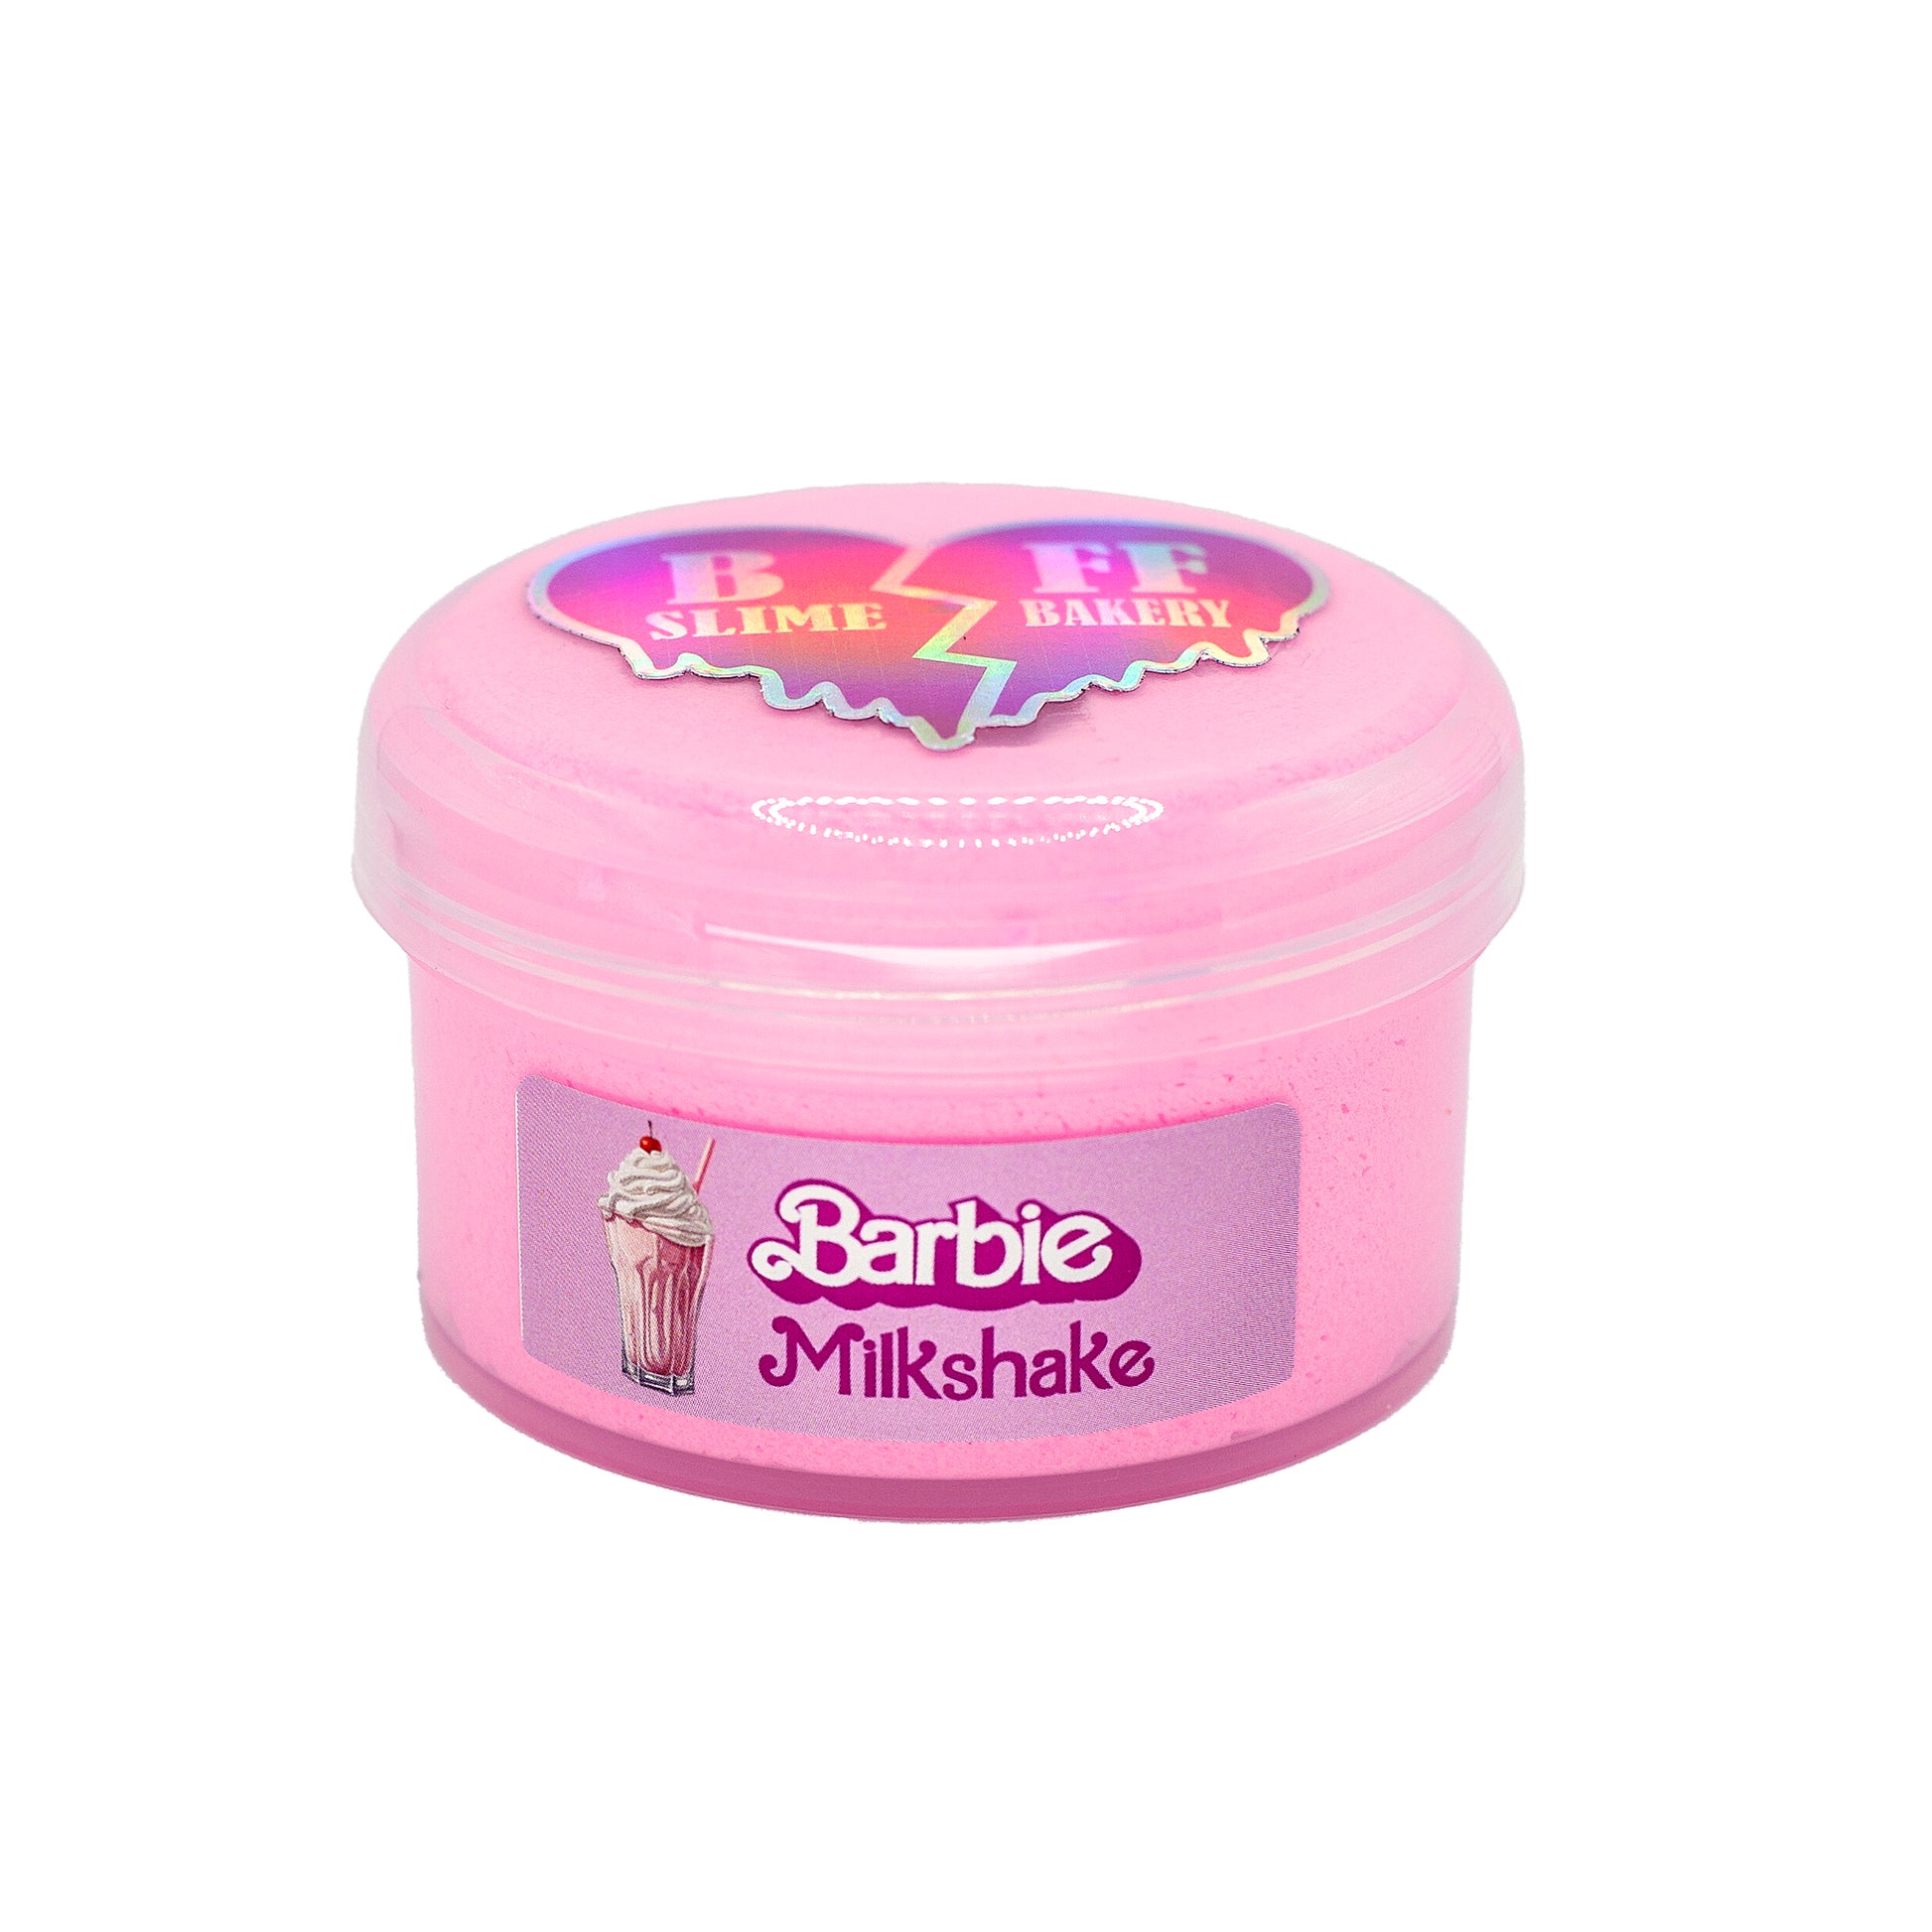 Barbie Milkshake – BFF Slime Bakery